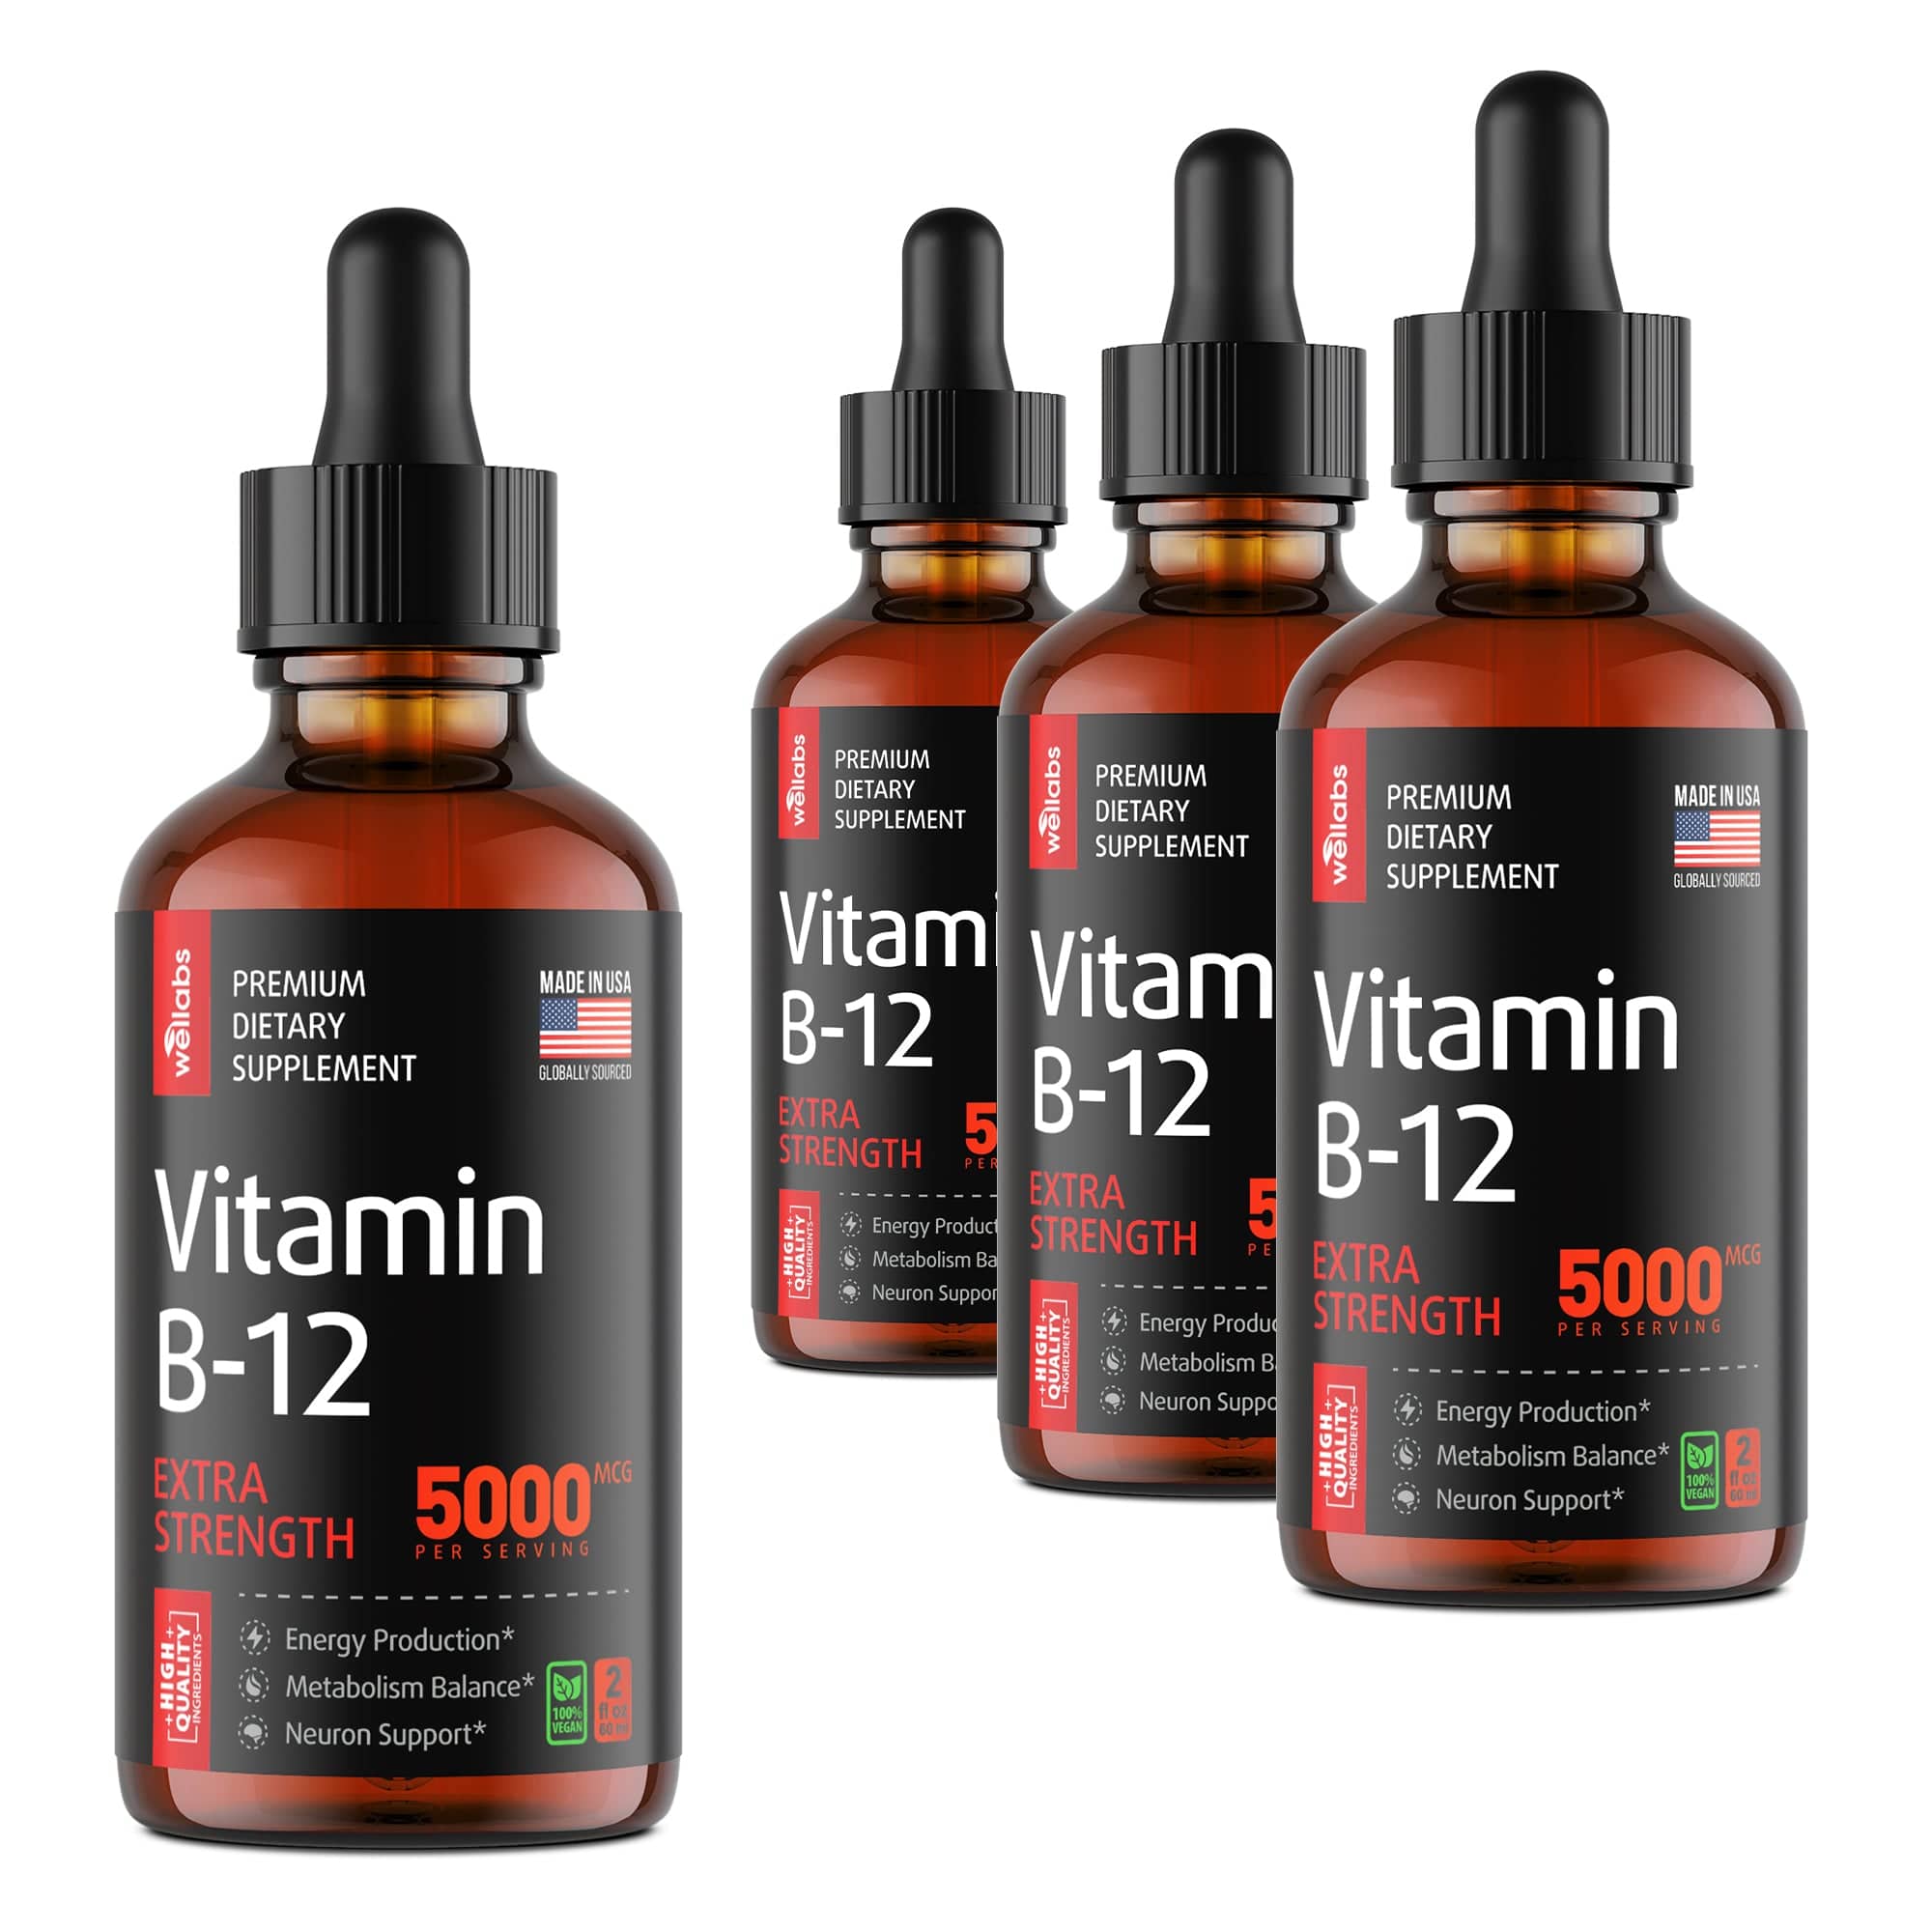 Vitamin B12 Drops - Buy 3 Get 1 Free